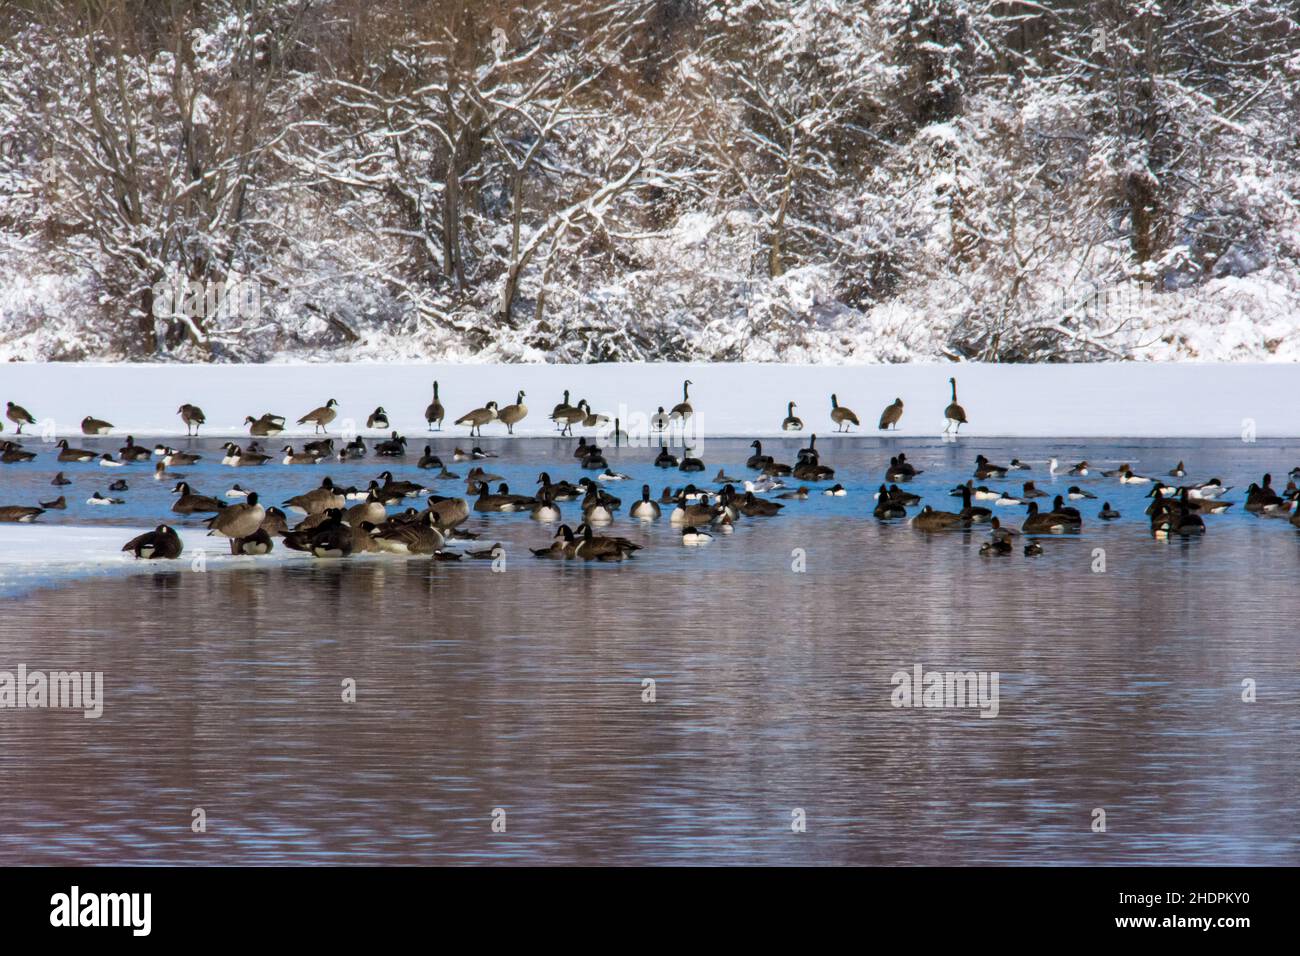 Un grande gruppo di oche canadesi si trova nelle acque gelide del lago. Foto Stock